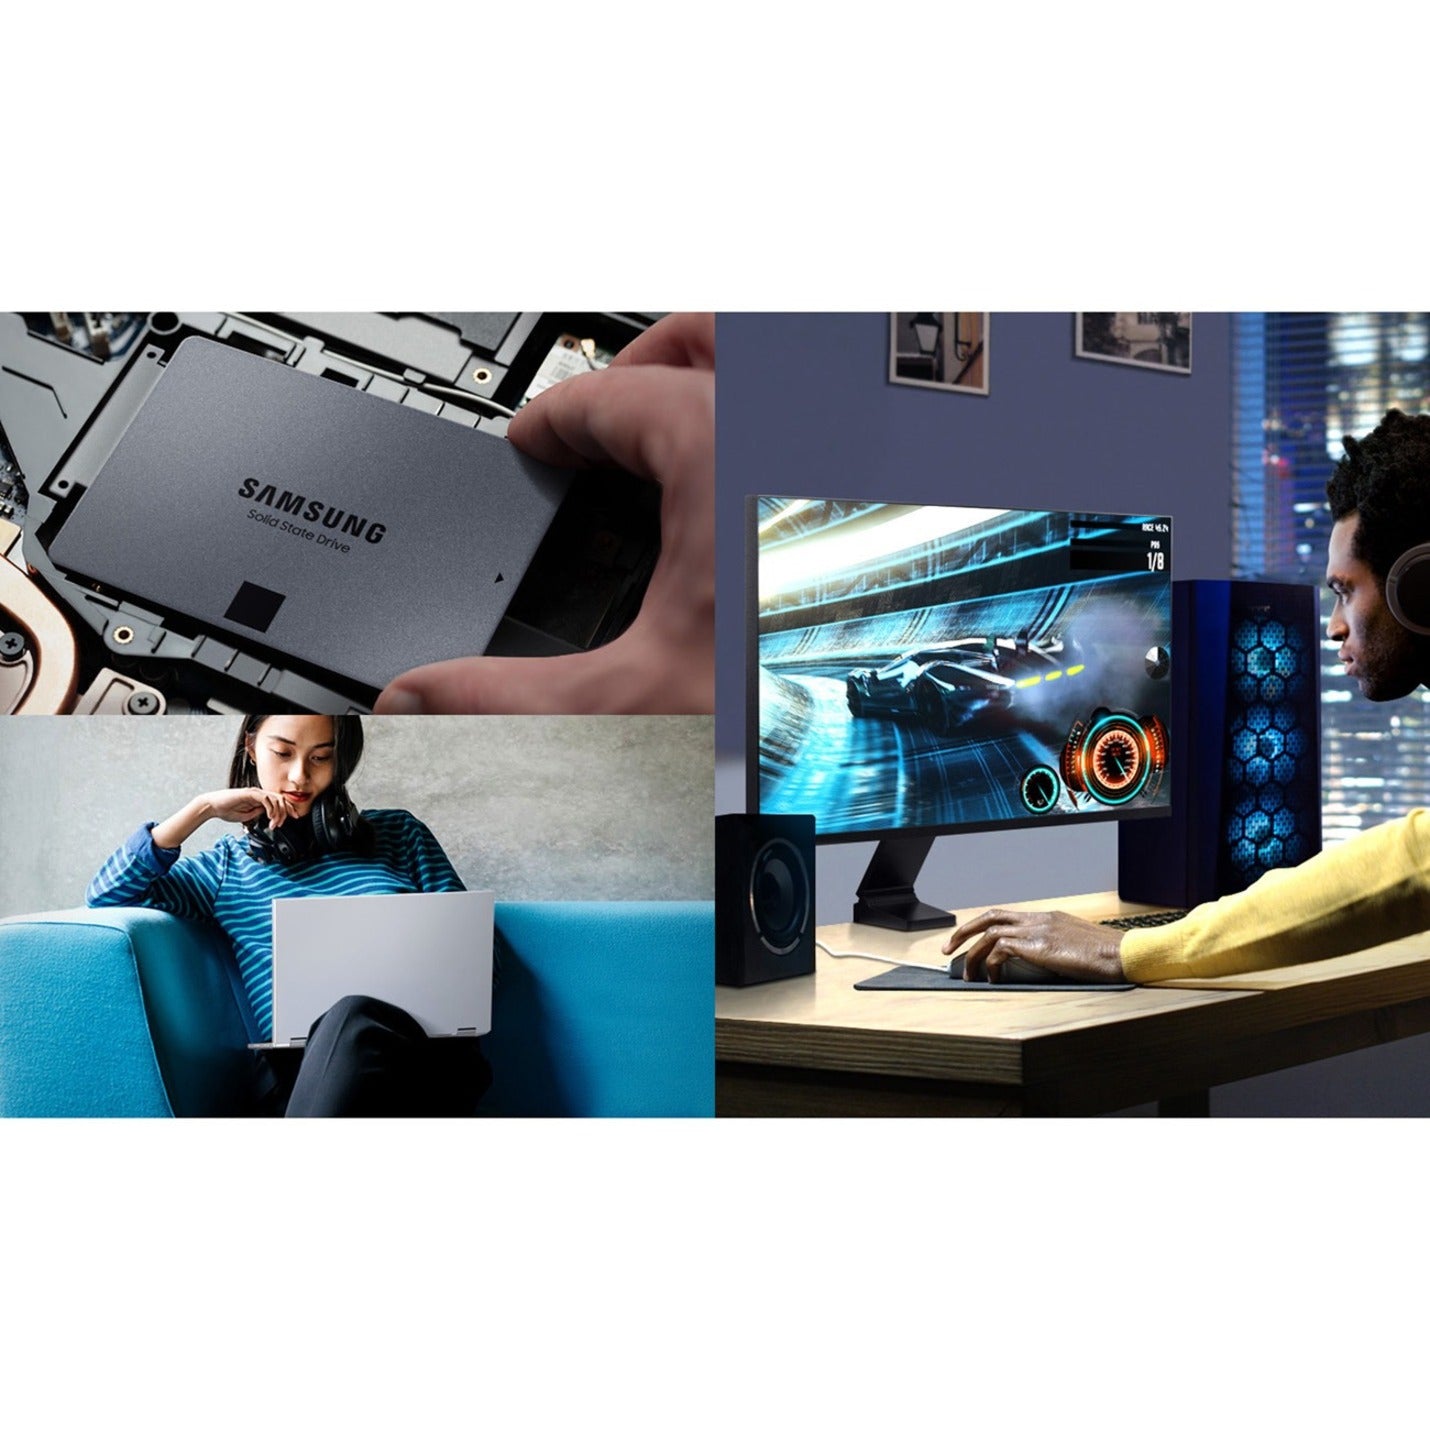 Samsung MZ-77Q8T0B/AM 870 QVO 8TB SATA 2.5" Internal Solid State Drive (SSD), 3 Year Warranty, 360 TB Endurance